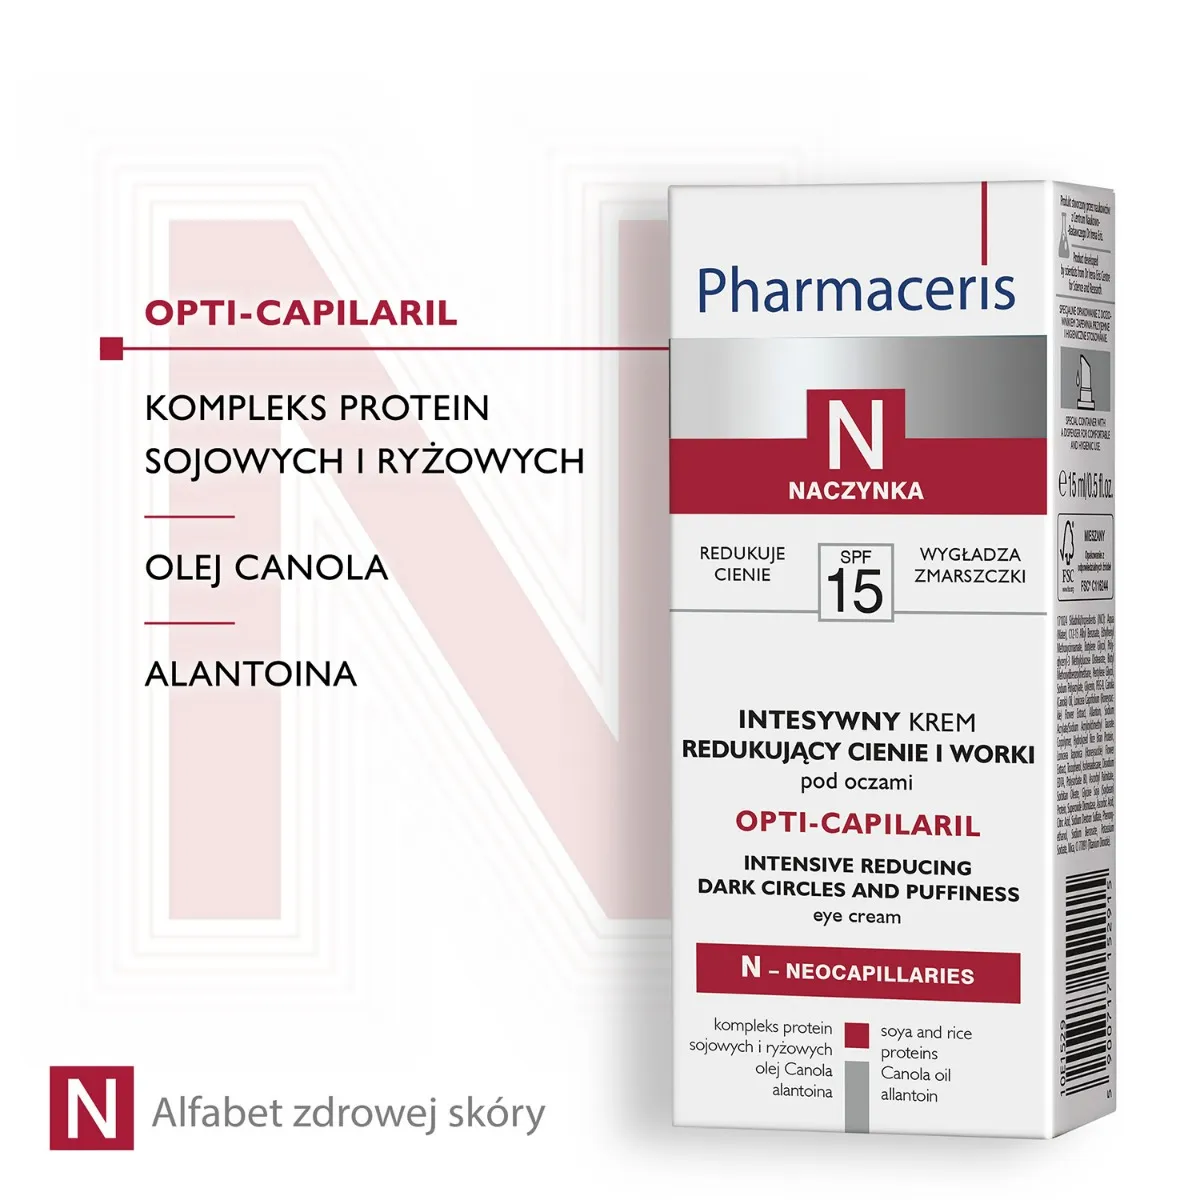 Pharmaceris N Opti Capilaril intensywny krem redukujący cienie i worki pod oczami Naczynka SPF 15 / 15 ml 